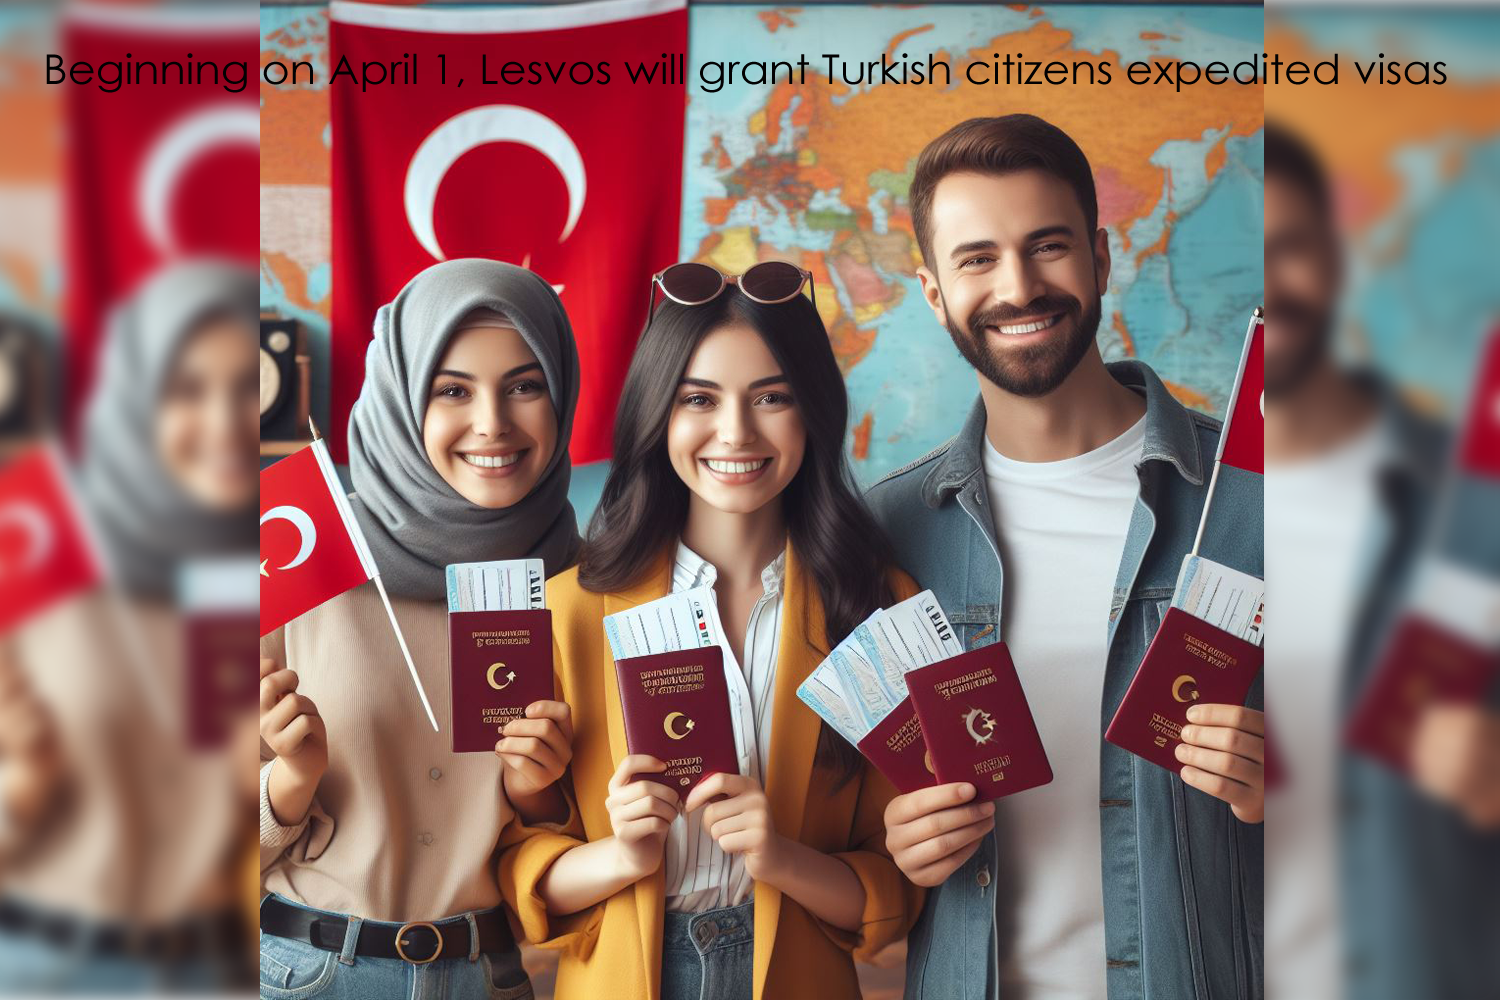 Beginning on April 1, Lesvos will grant Turkish citizens expedited visas.